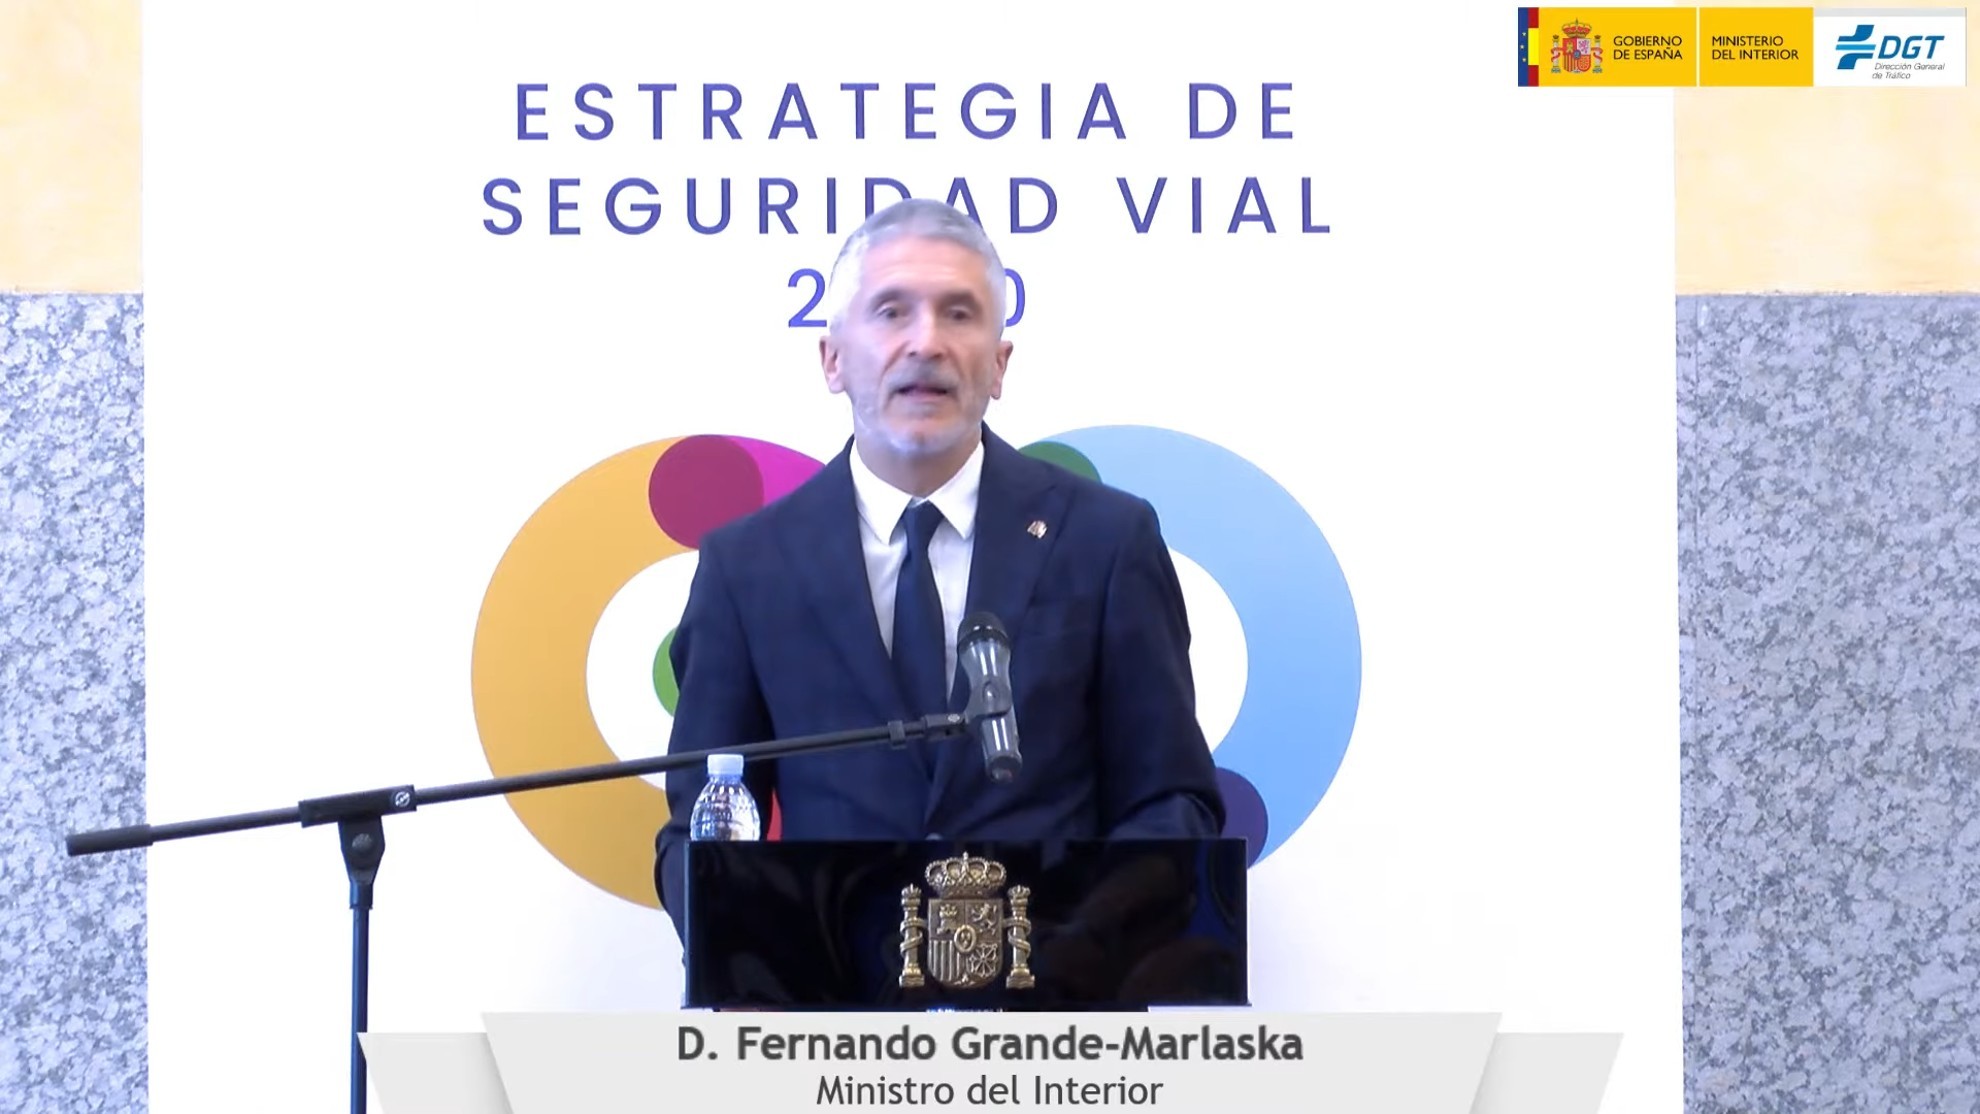 DGT - Trafico - Plan Estrategico 2030 - Pere Navarro - Grande Marlaska